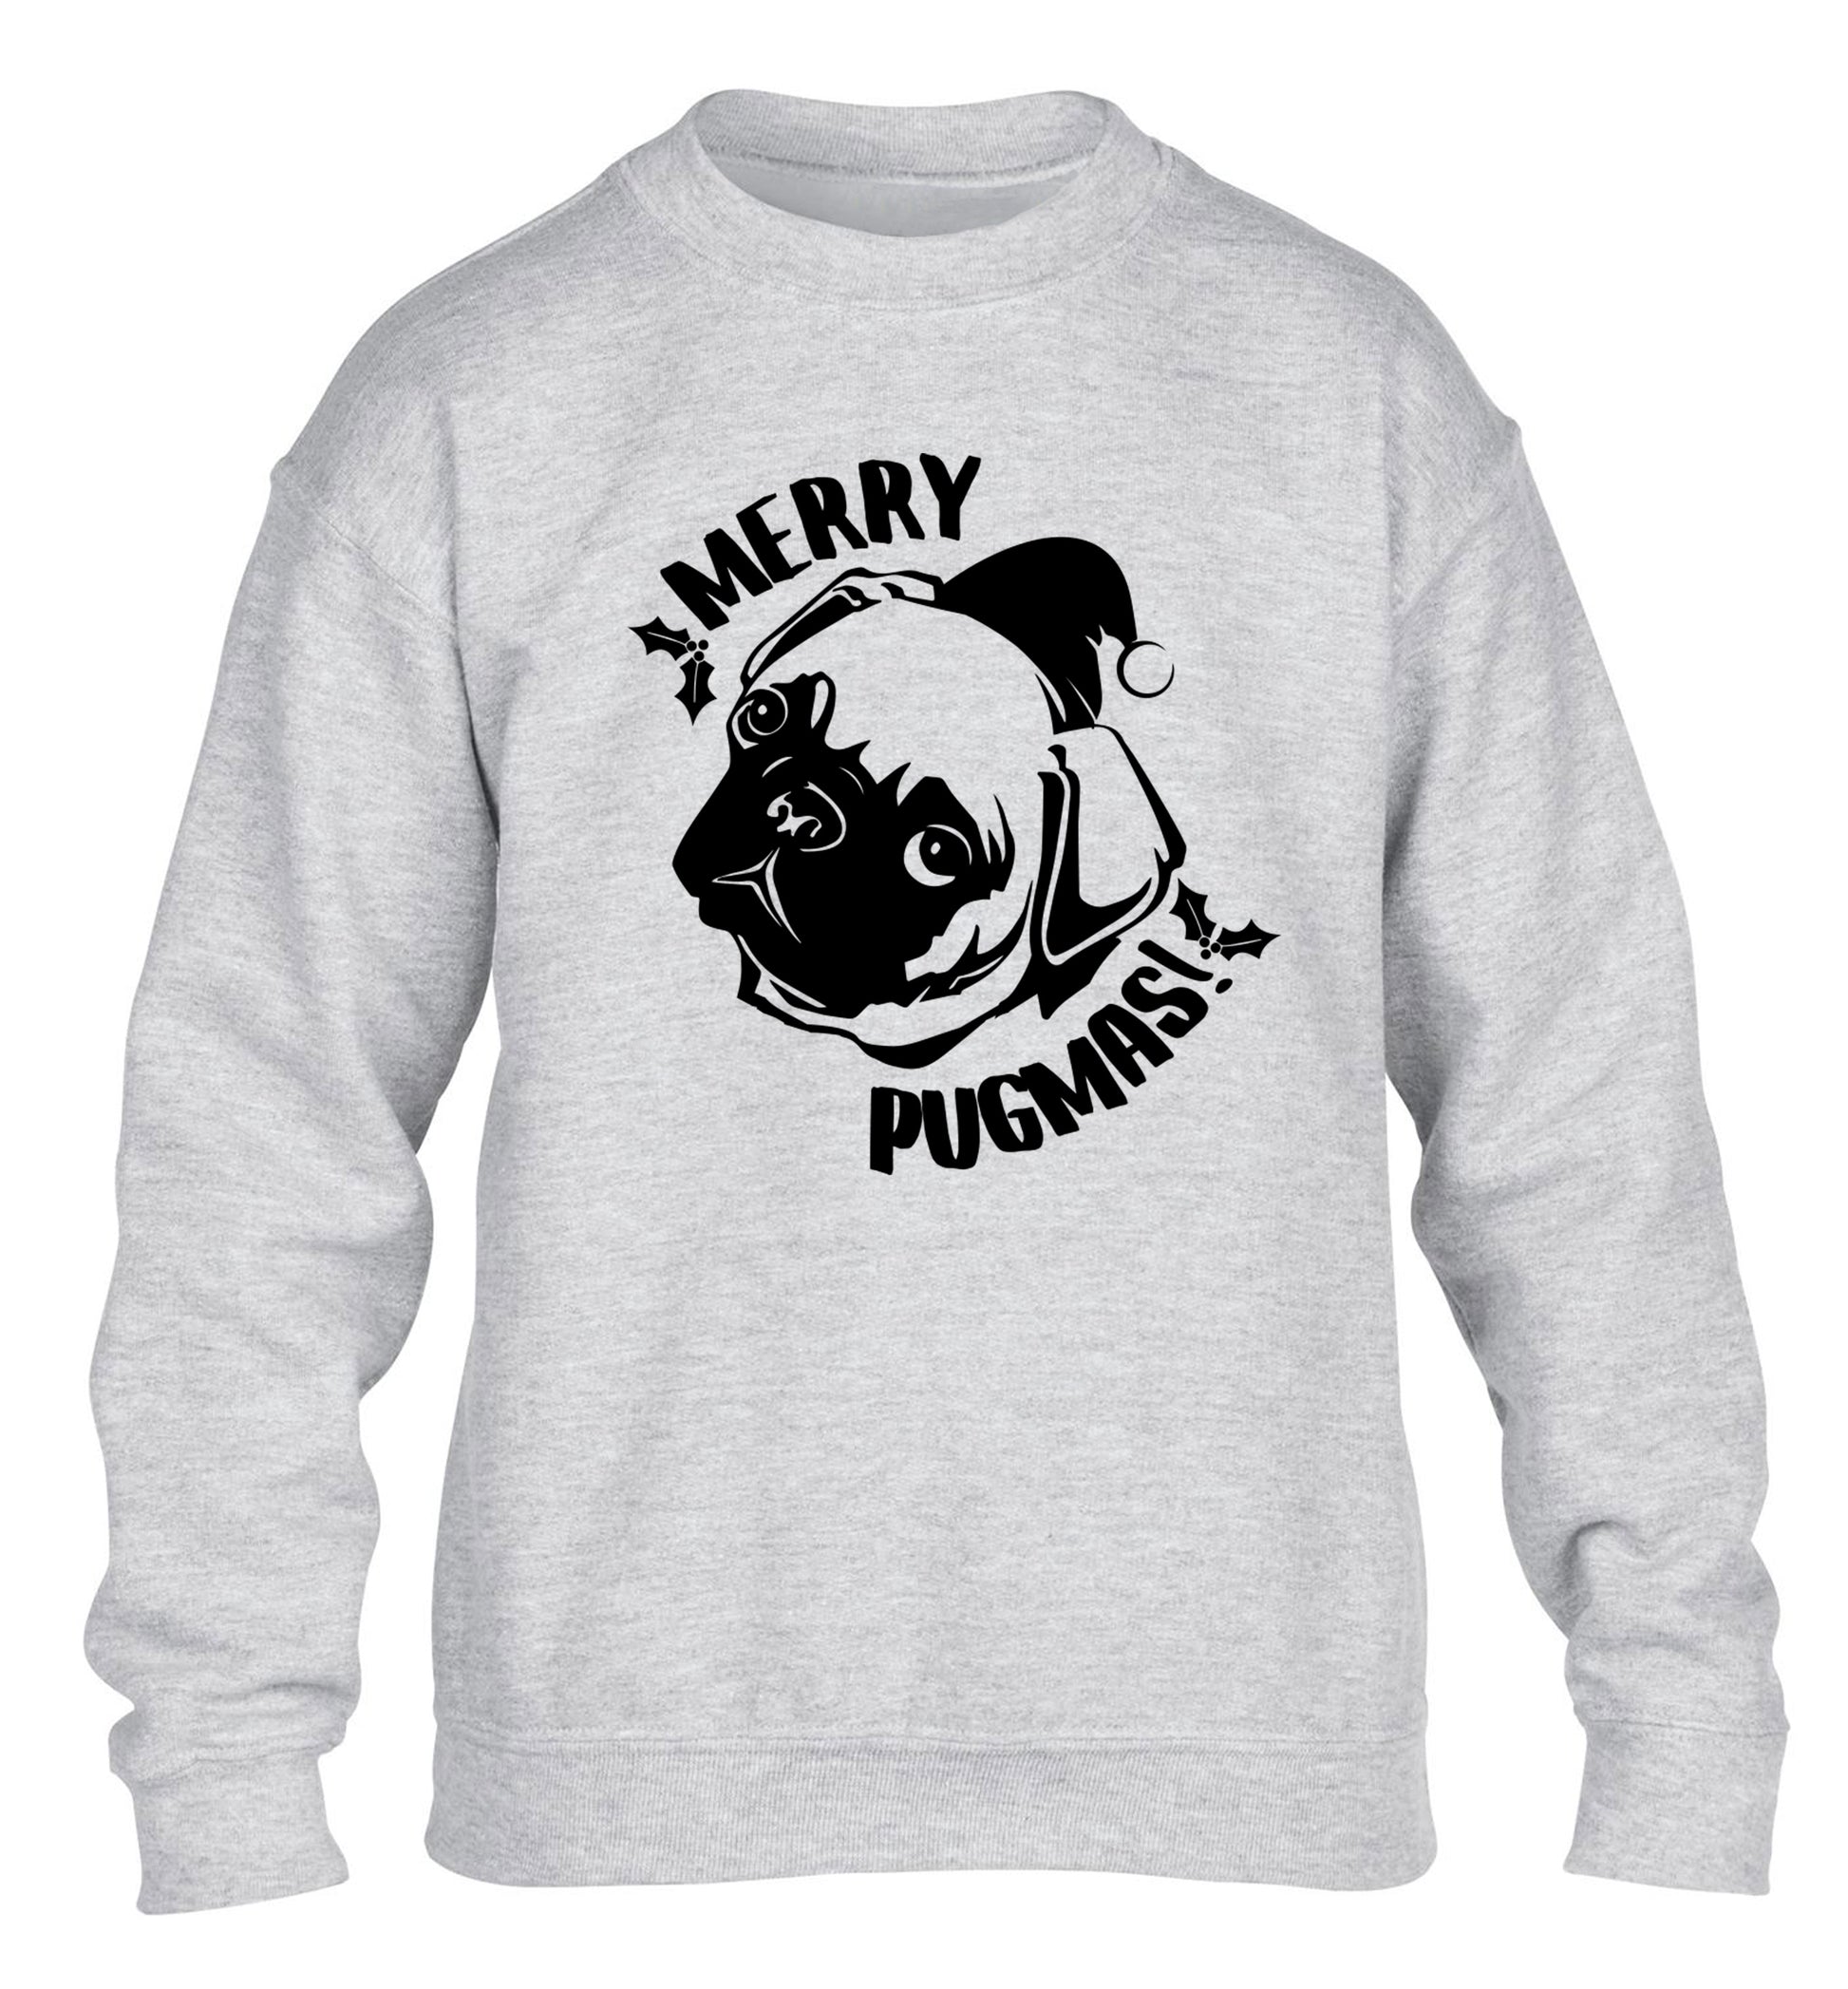 Merry Pugmas children's grey sweater 12-14 Years